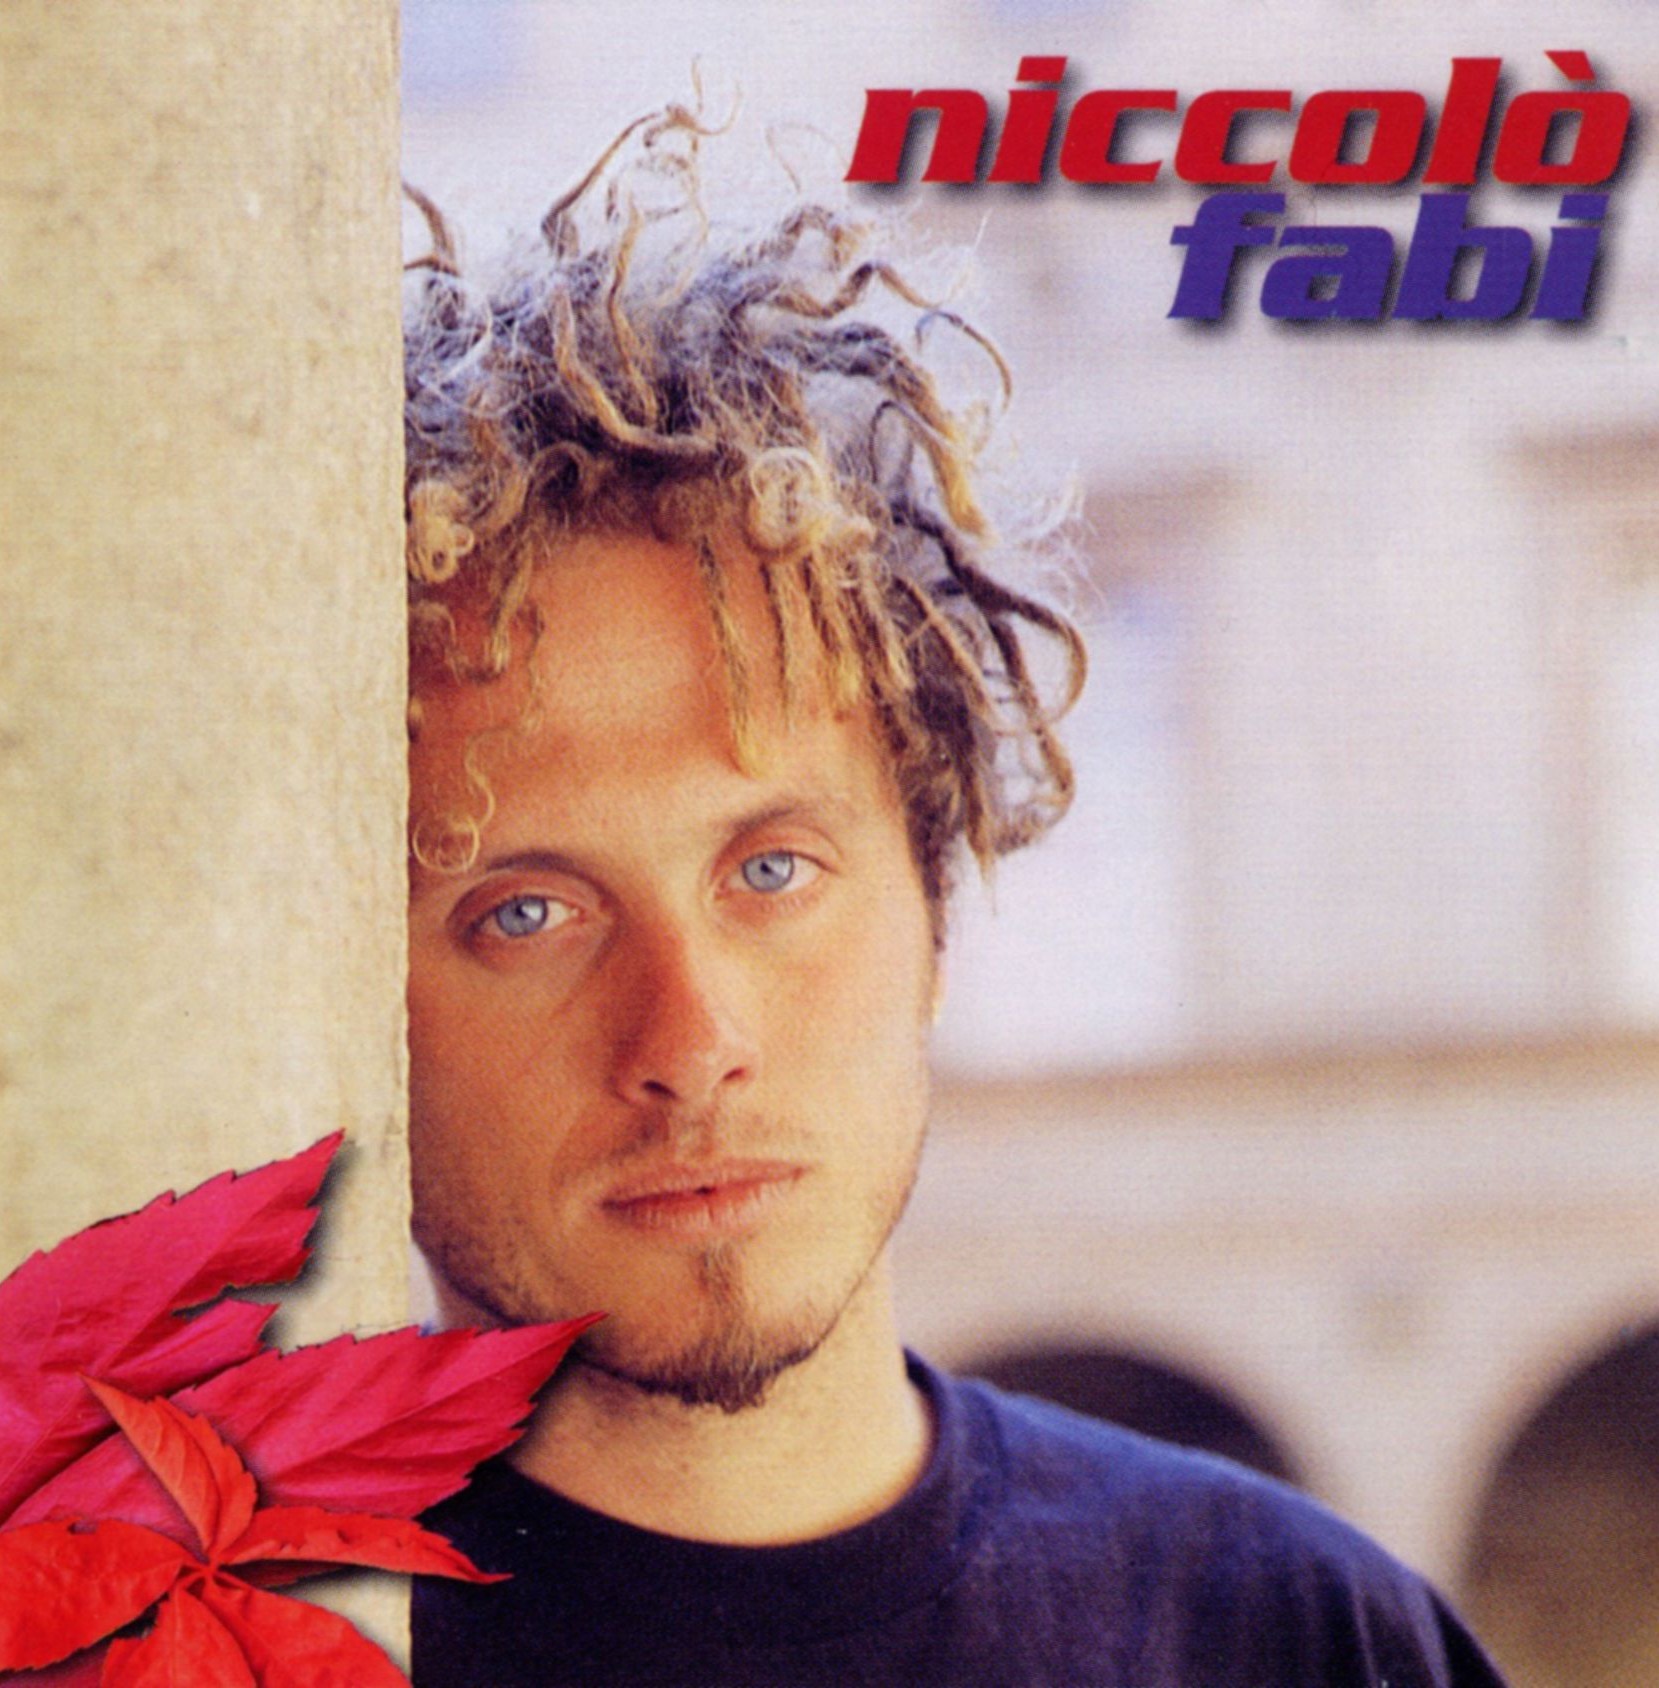 Domani esce “una somma di piccole cose”, il nuovo album del cantautore Niccolò Fabi.